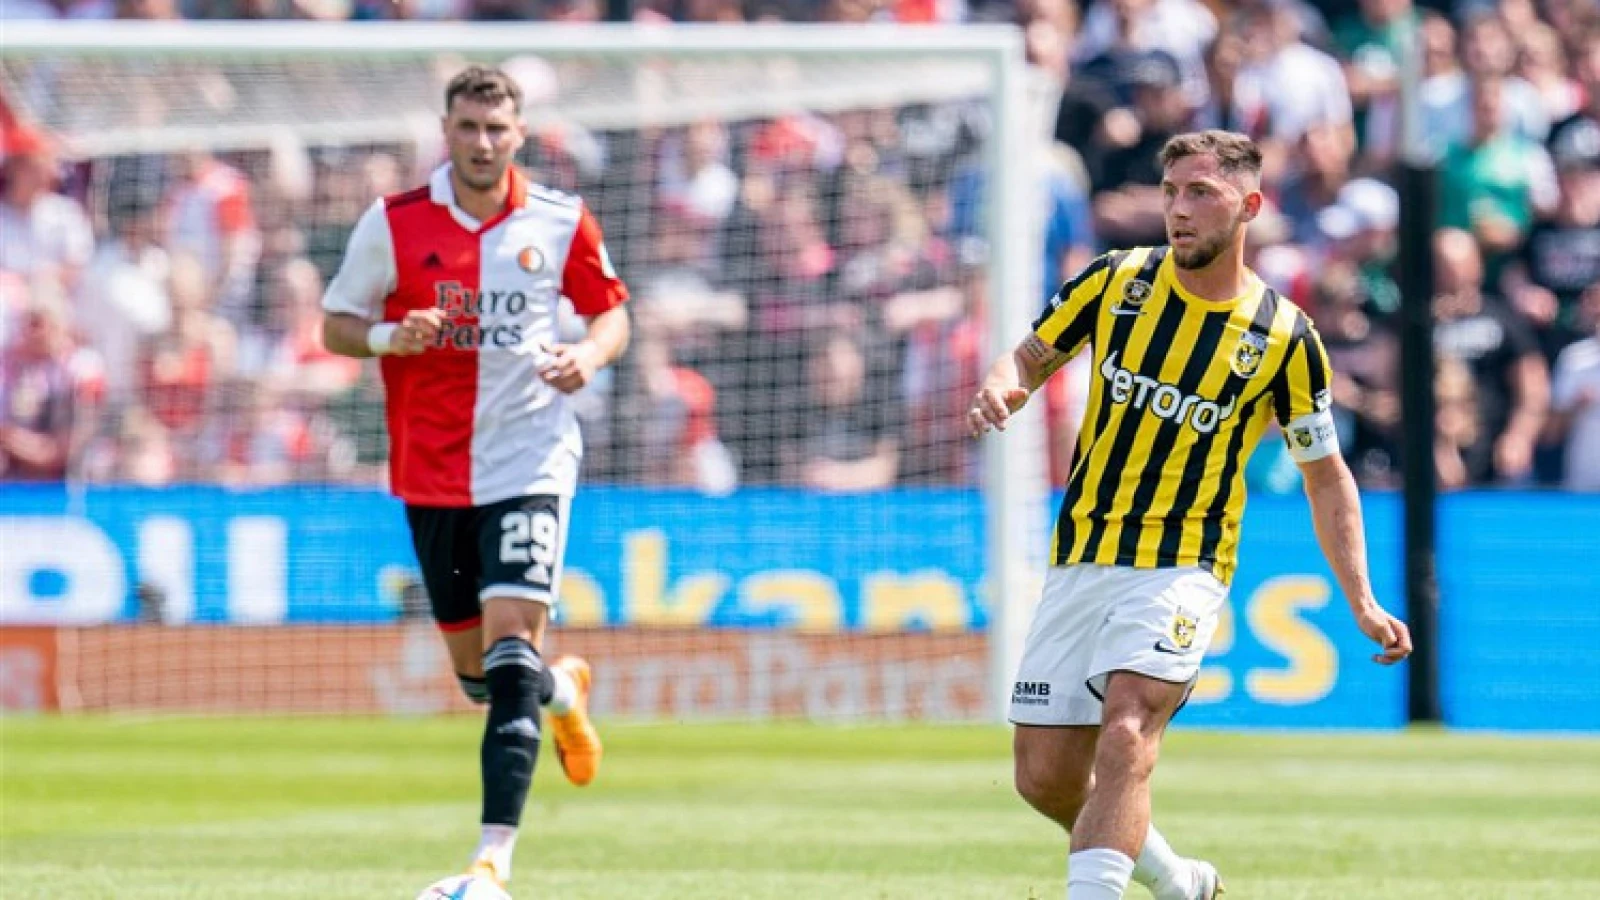 SAMENVATTING | Feyenoord - Vitesse 0-1